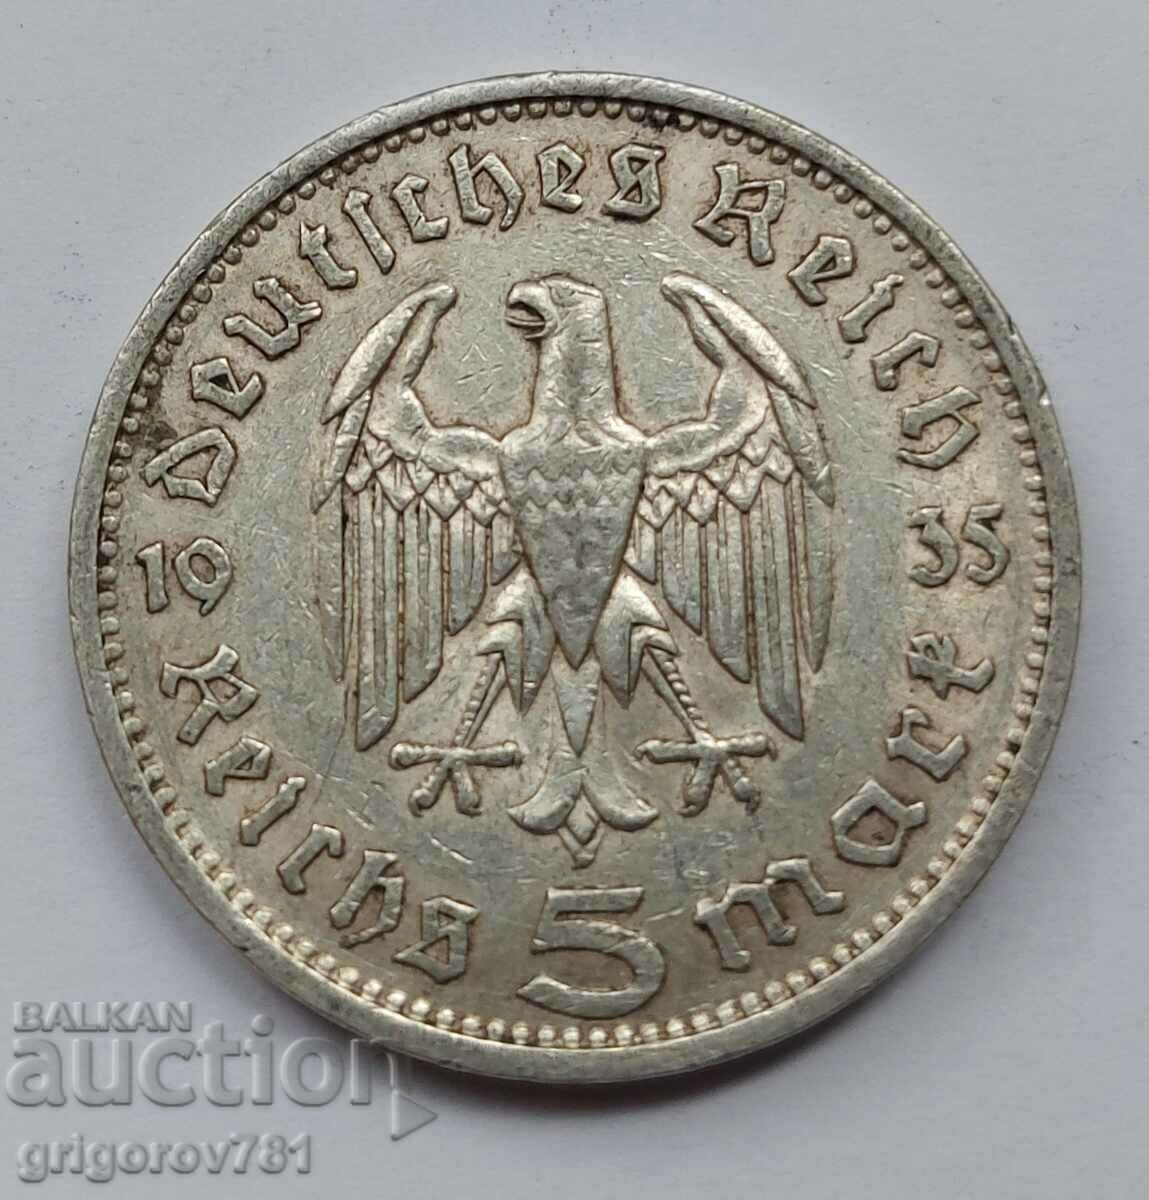 5 Mark Silver Γερμανία 1935 F III Reich Ασημένιο νόμισμα #72